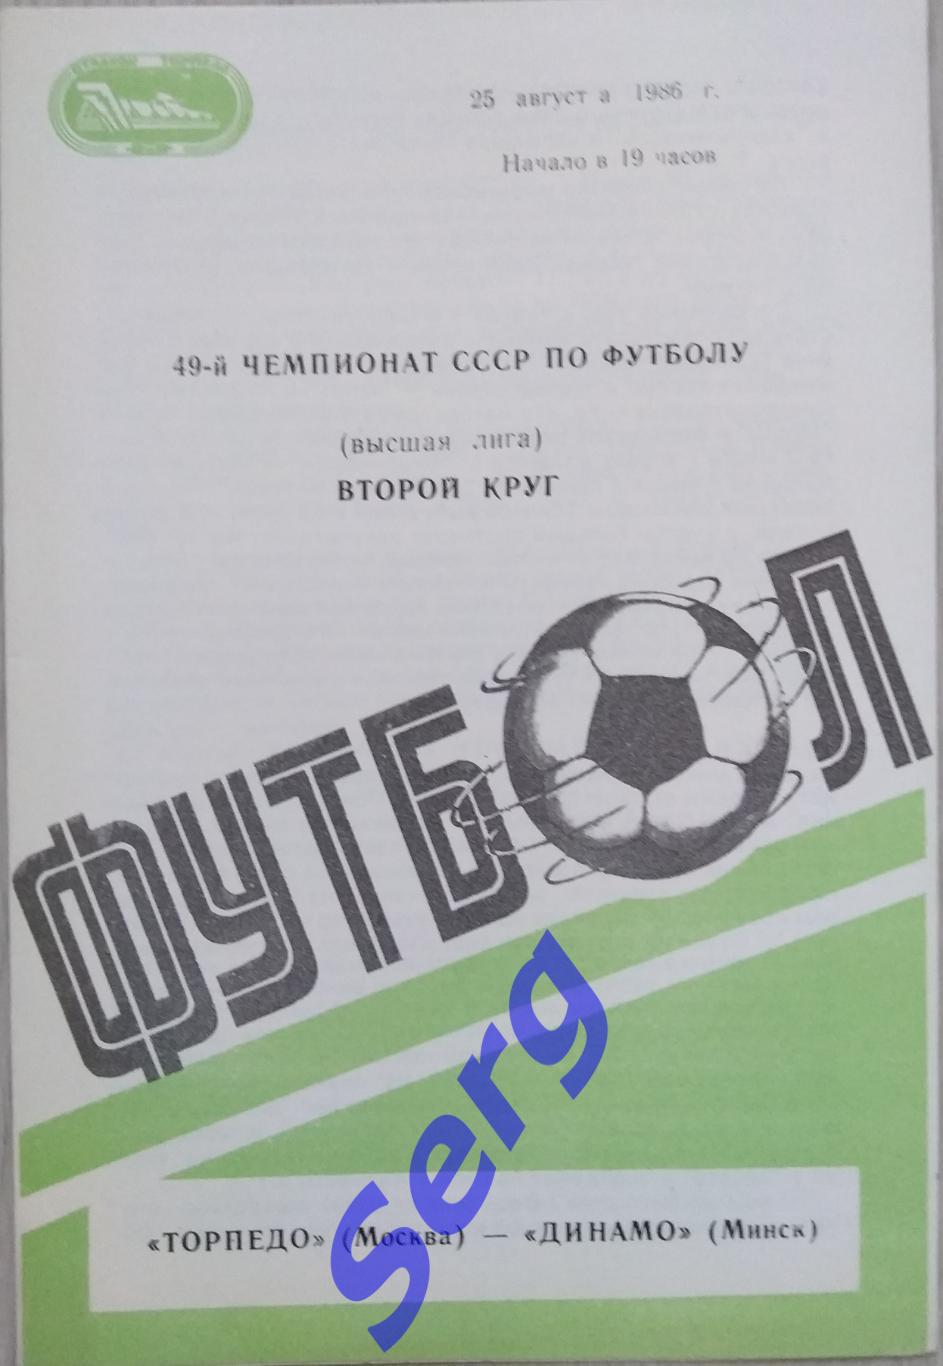 Торпедо Москва - Динамо Минск - 25 августа 1986 год